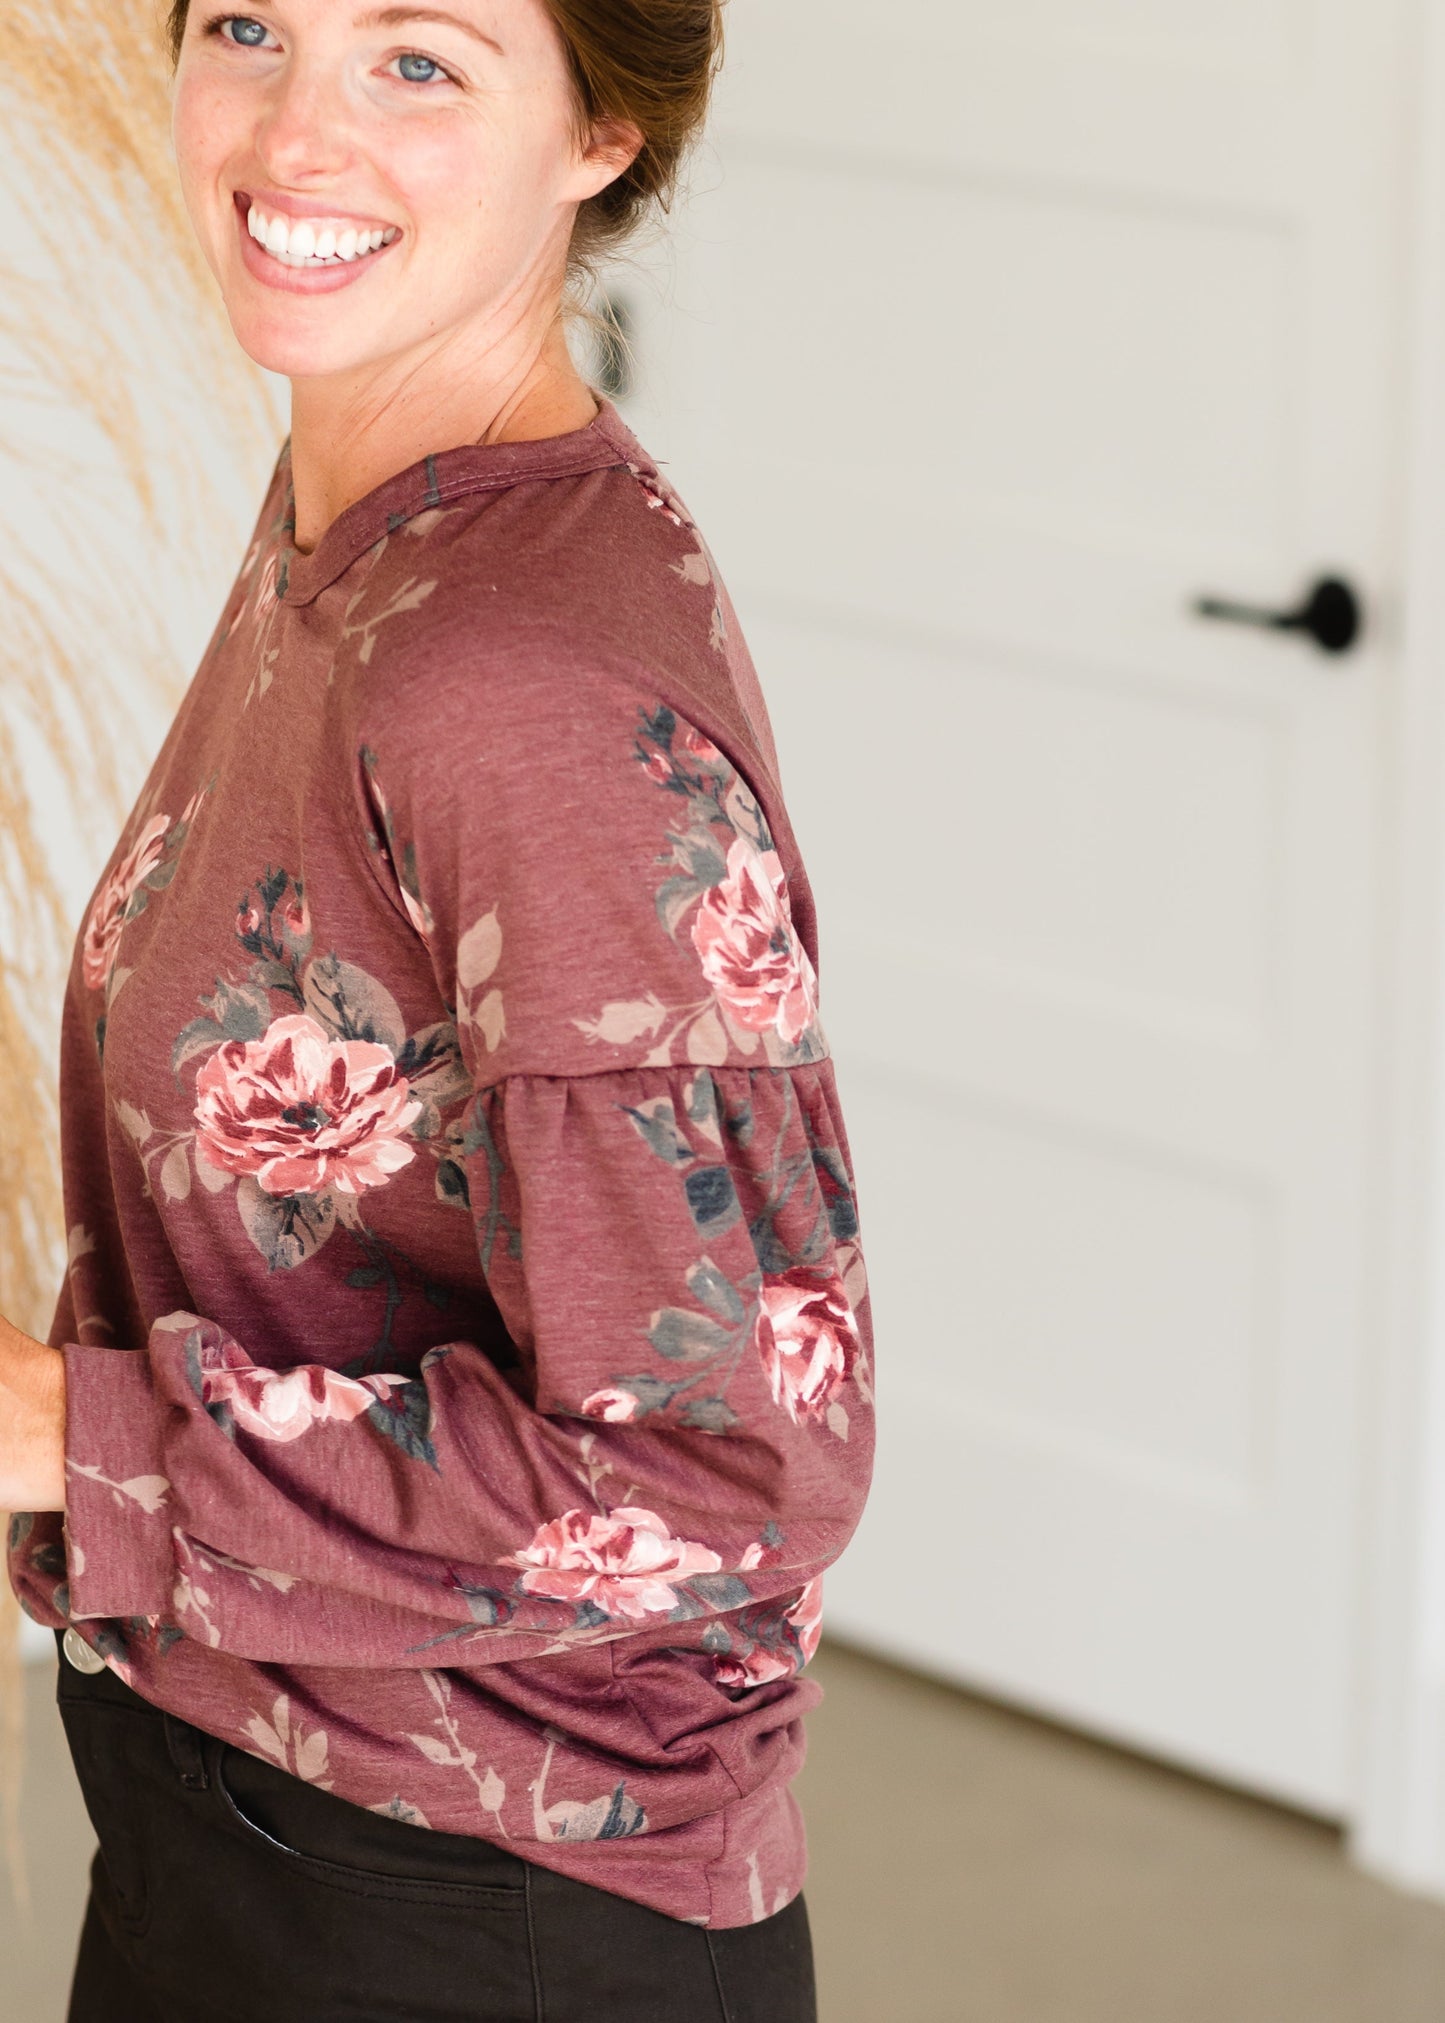 Mauve Long Sleeve Floral Top - FINAL SALE Shirt